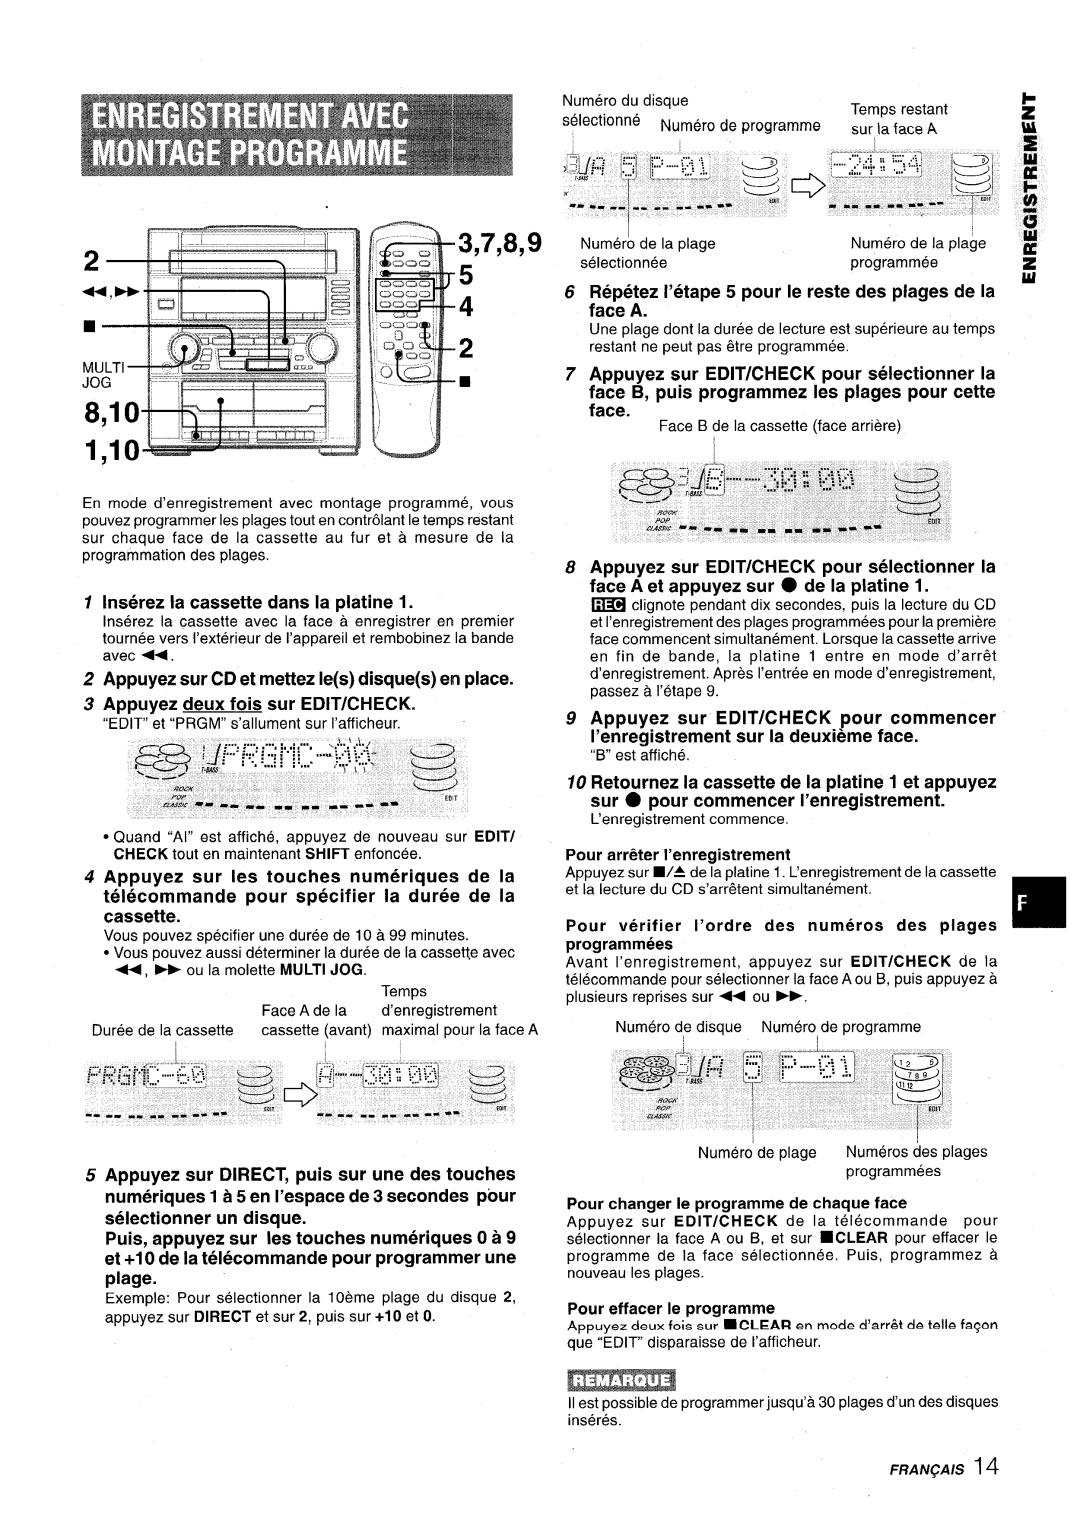 Aiwa Z-VR55 manual 1,10u, Inserez la cassette clans la platine, Appuyez deux fois sur EDIT/CHECK, 3,7,8,9, 8,10 